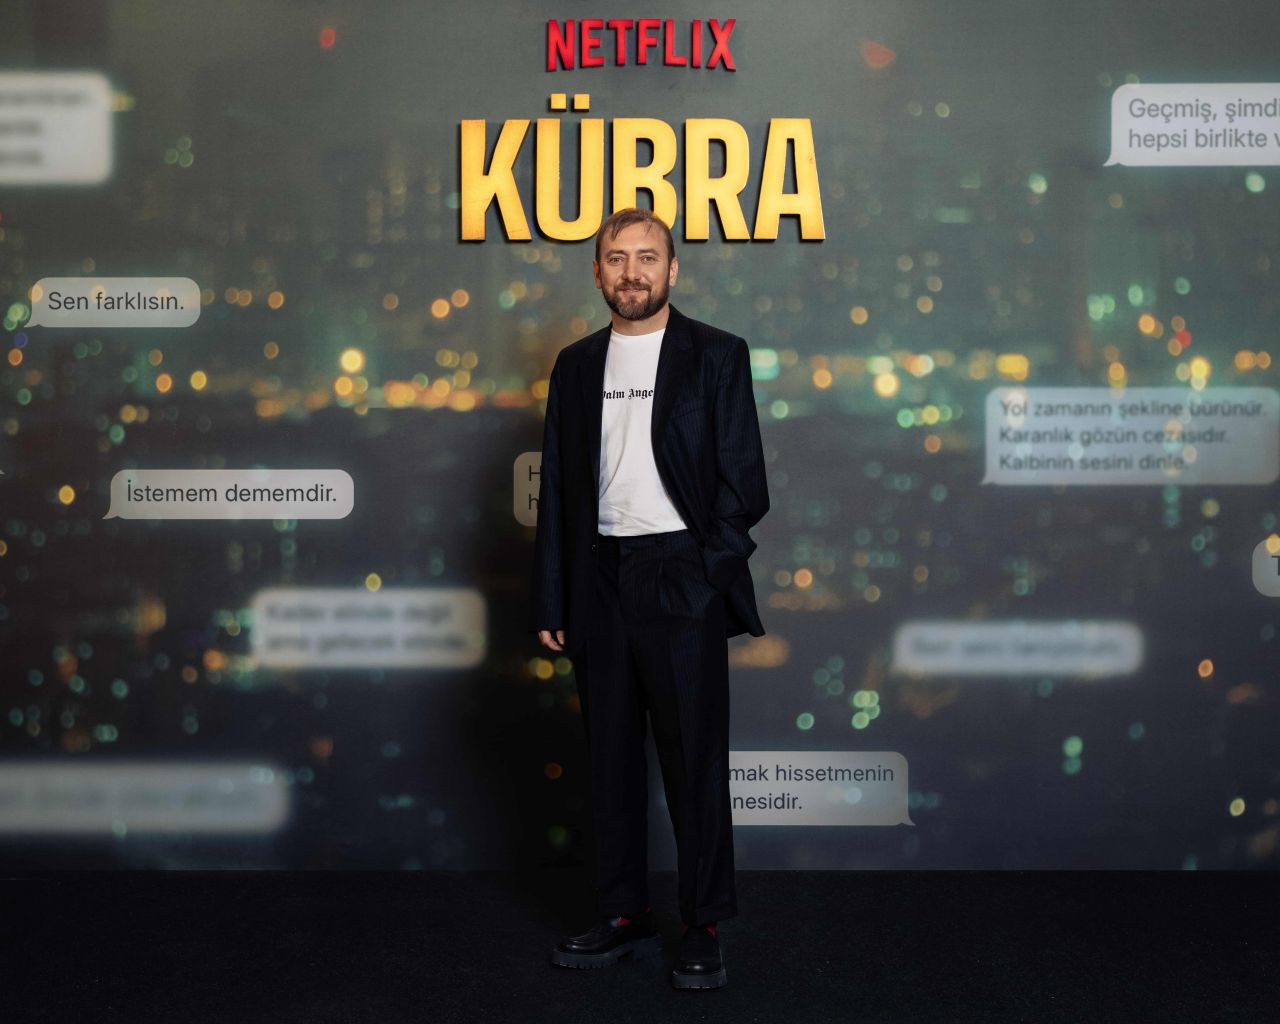 Çağatay Ulusoy’un Yeni Netflix Dizisi Kübra’nın Galası Gerçekleşti